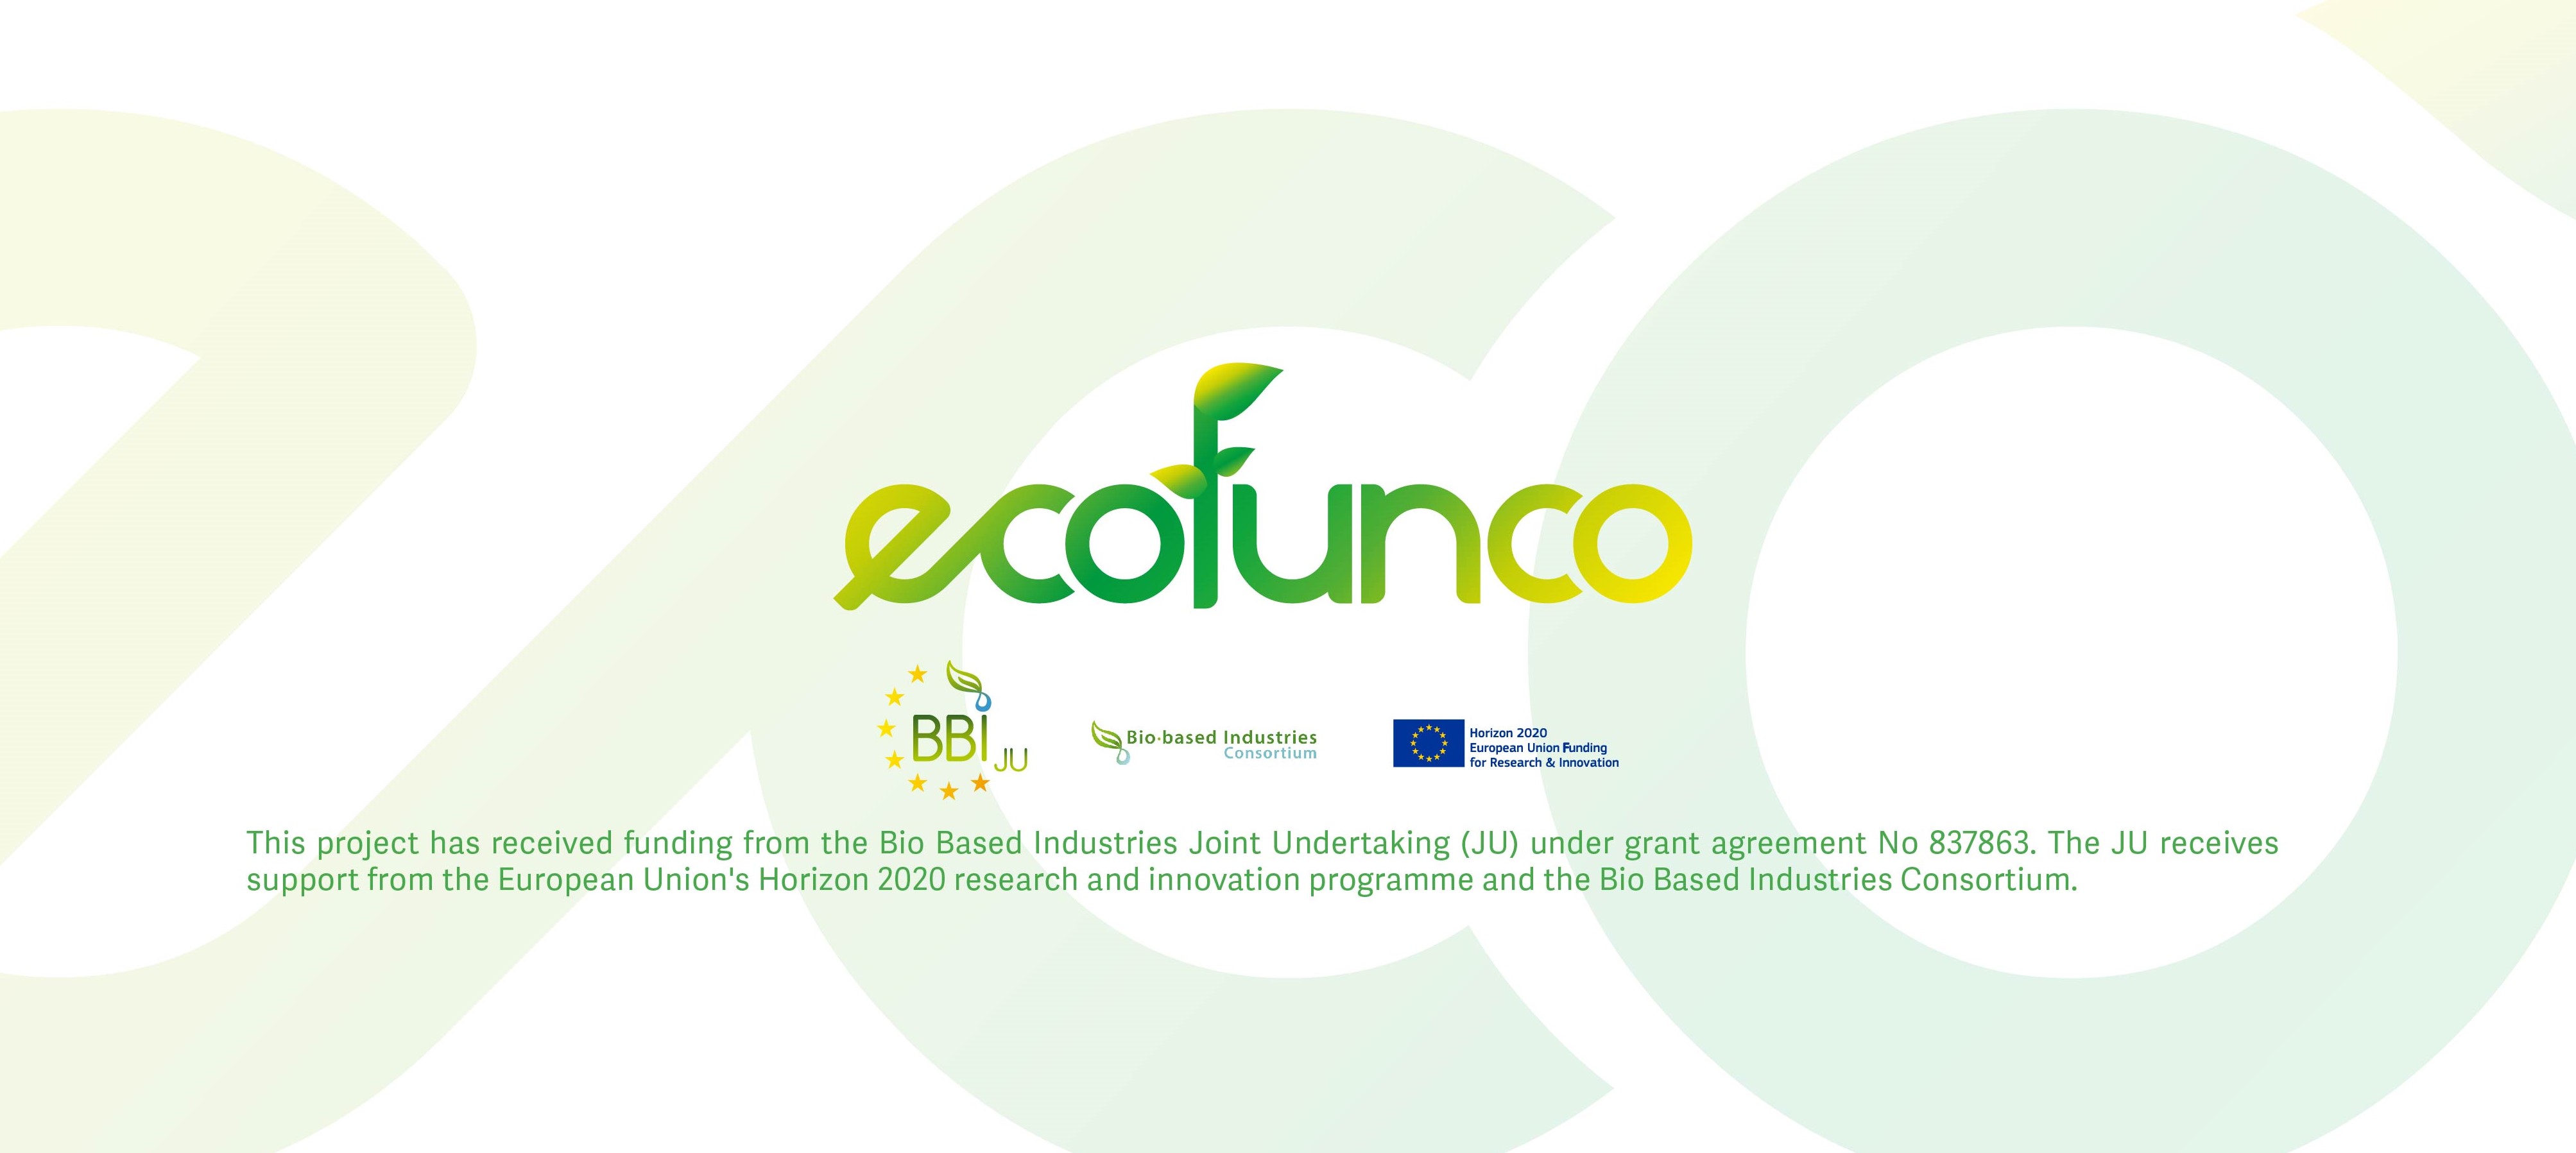 Logo Ecofunco con acknowledgement